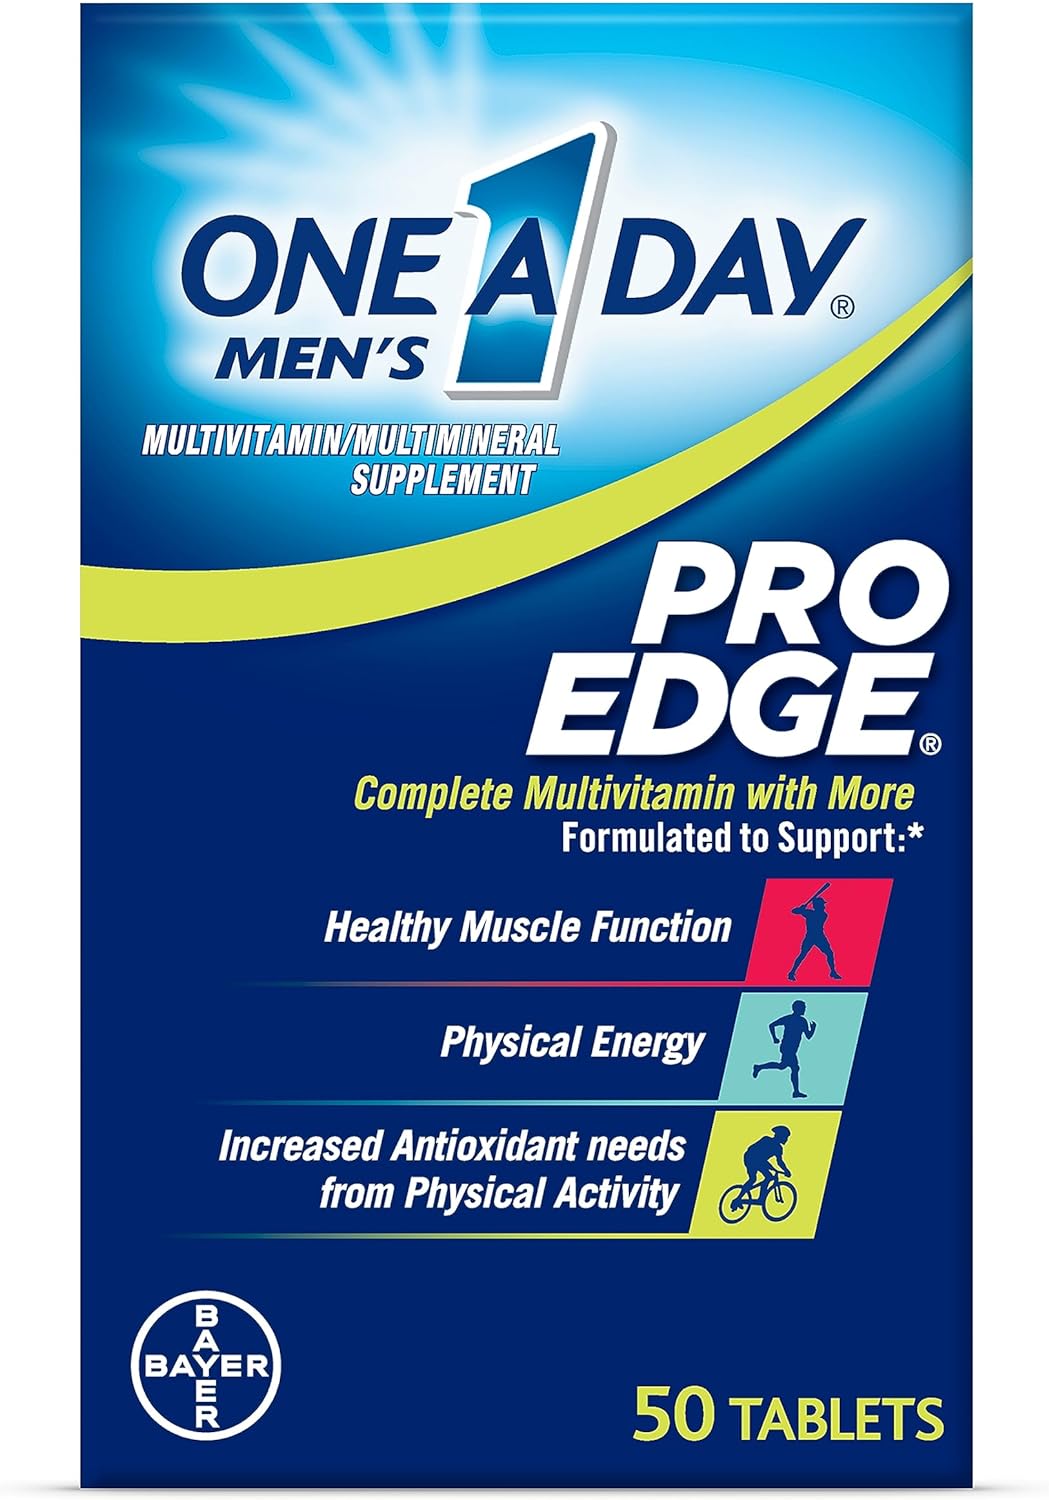 One A Day Men’s Pro Edge Multivitamin, Supplement with Vitamin A, Vitamin C, Vitamin D, Vitamin E 